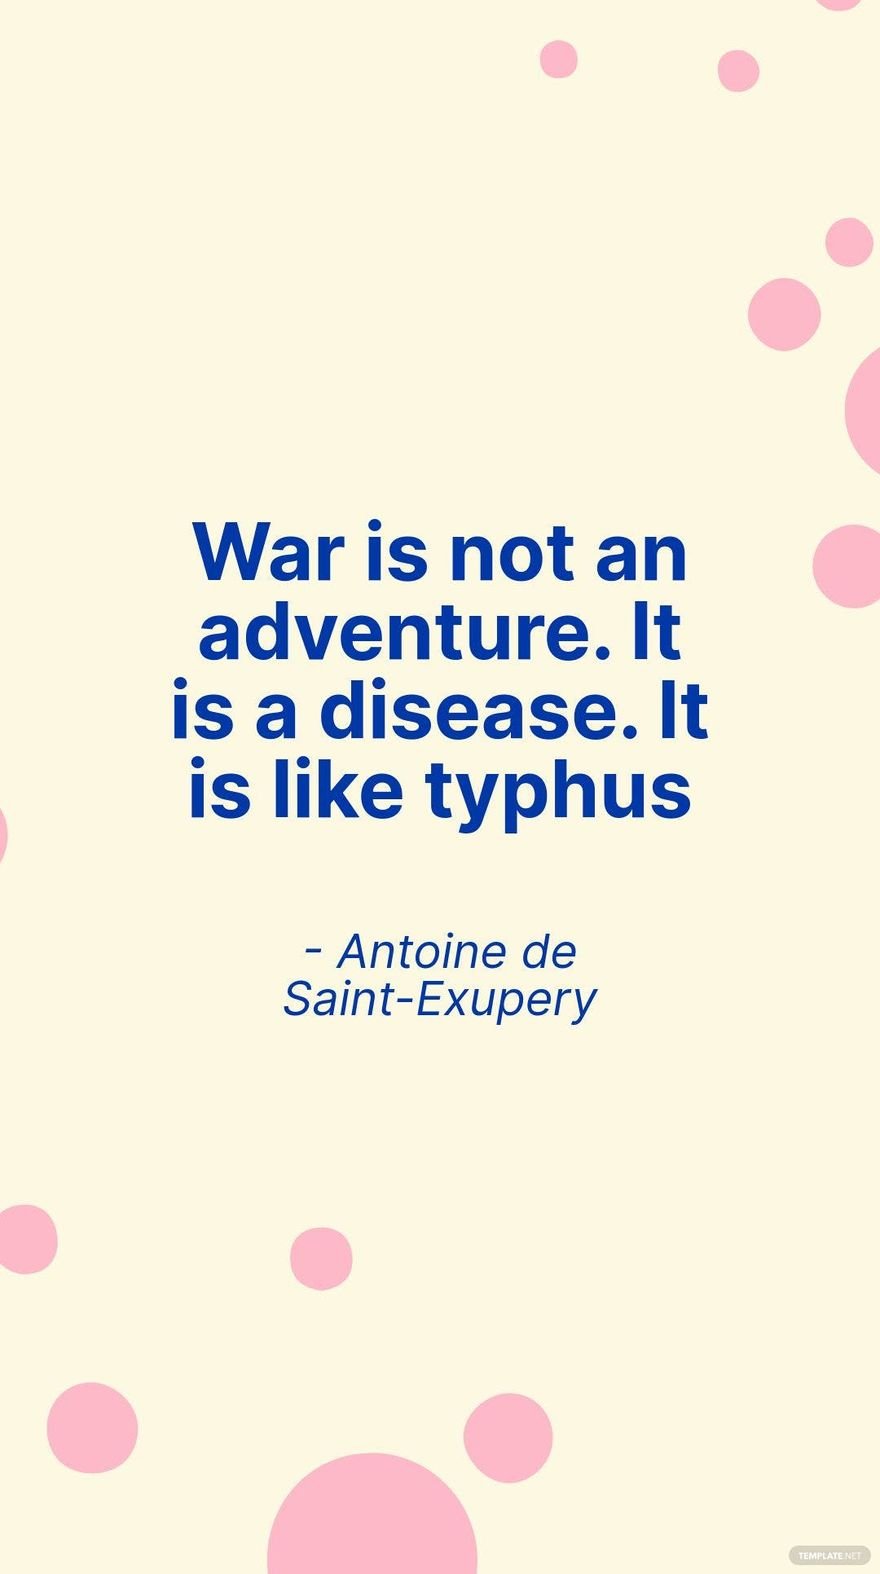 Free Antoine de Saint-Exupery - War is not an adventure. It is a disease. It is like typhus in JPG